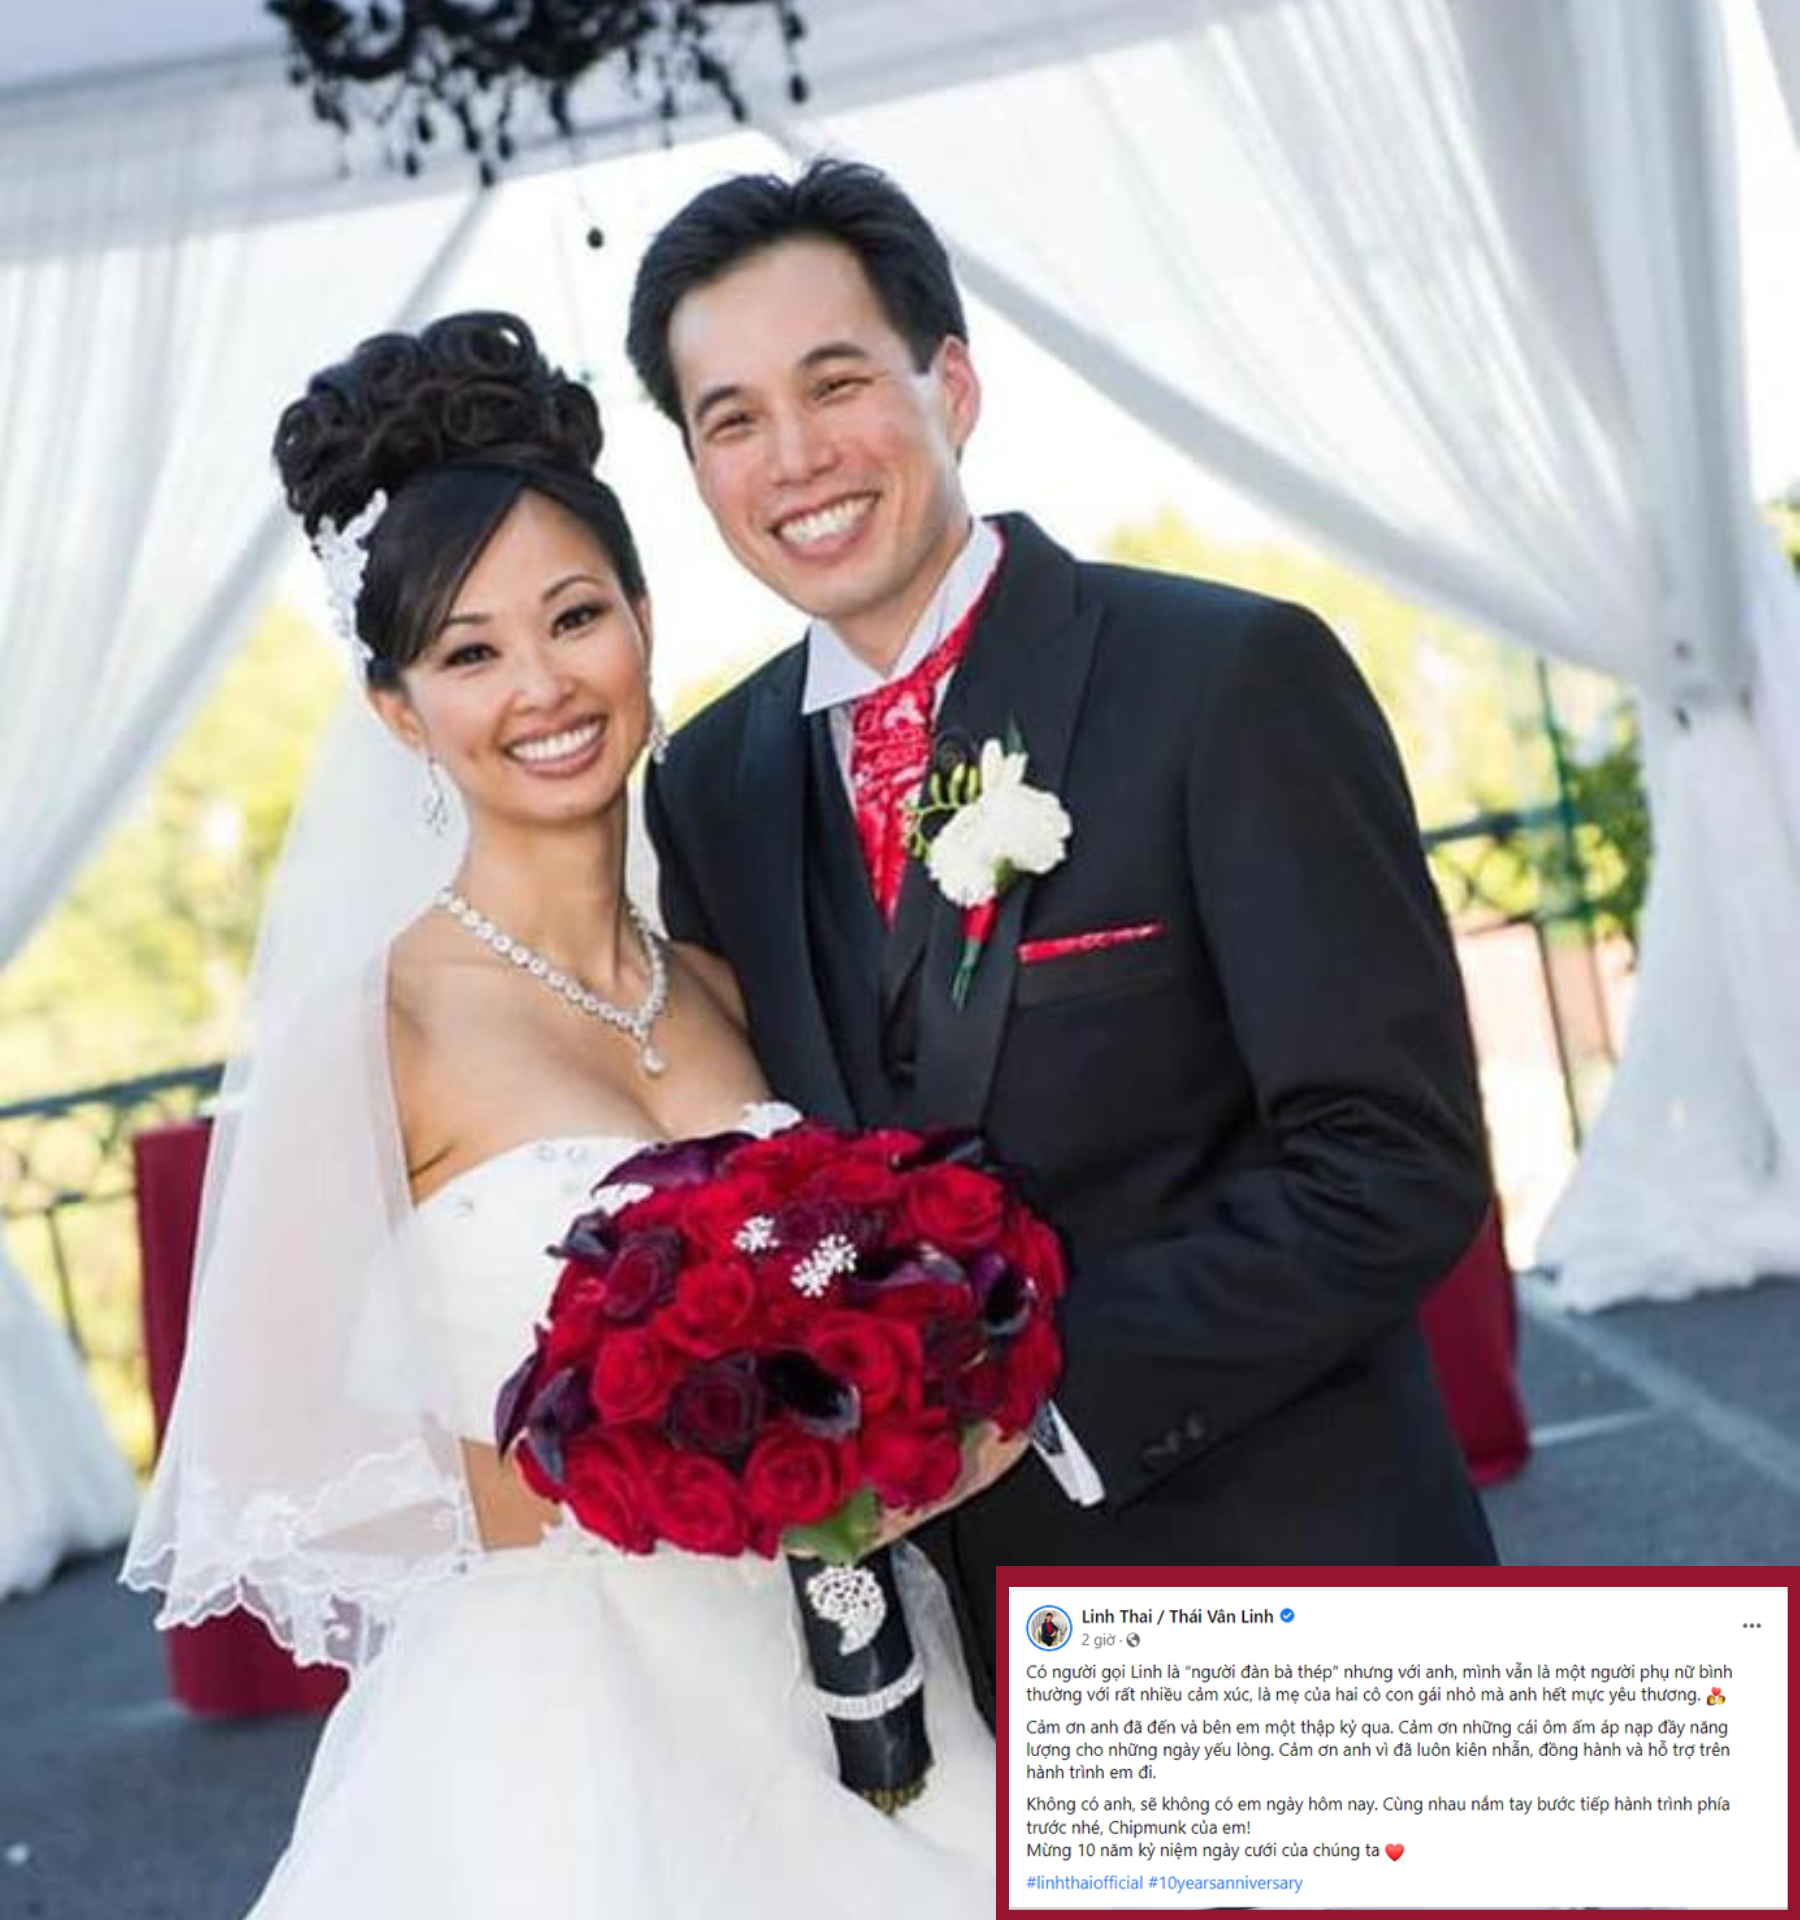 Shark Linh khoe ảnh thuở mới kết hôn, viết tâm tình ngọt ngào nhân kỉ niệm 10 năm ngày cưới - Ảnh 1